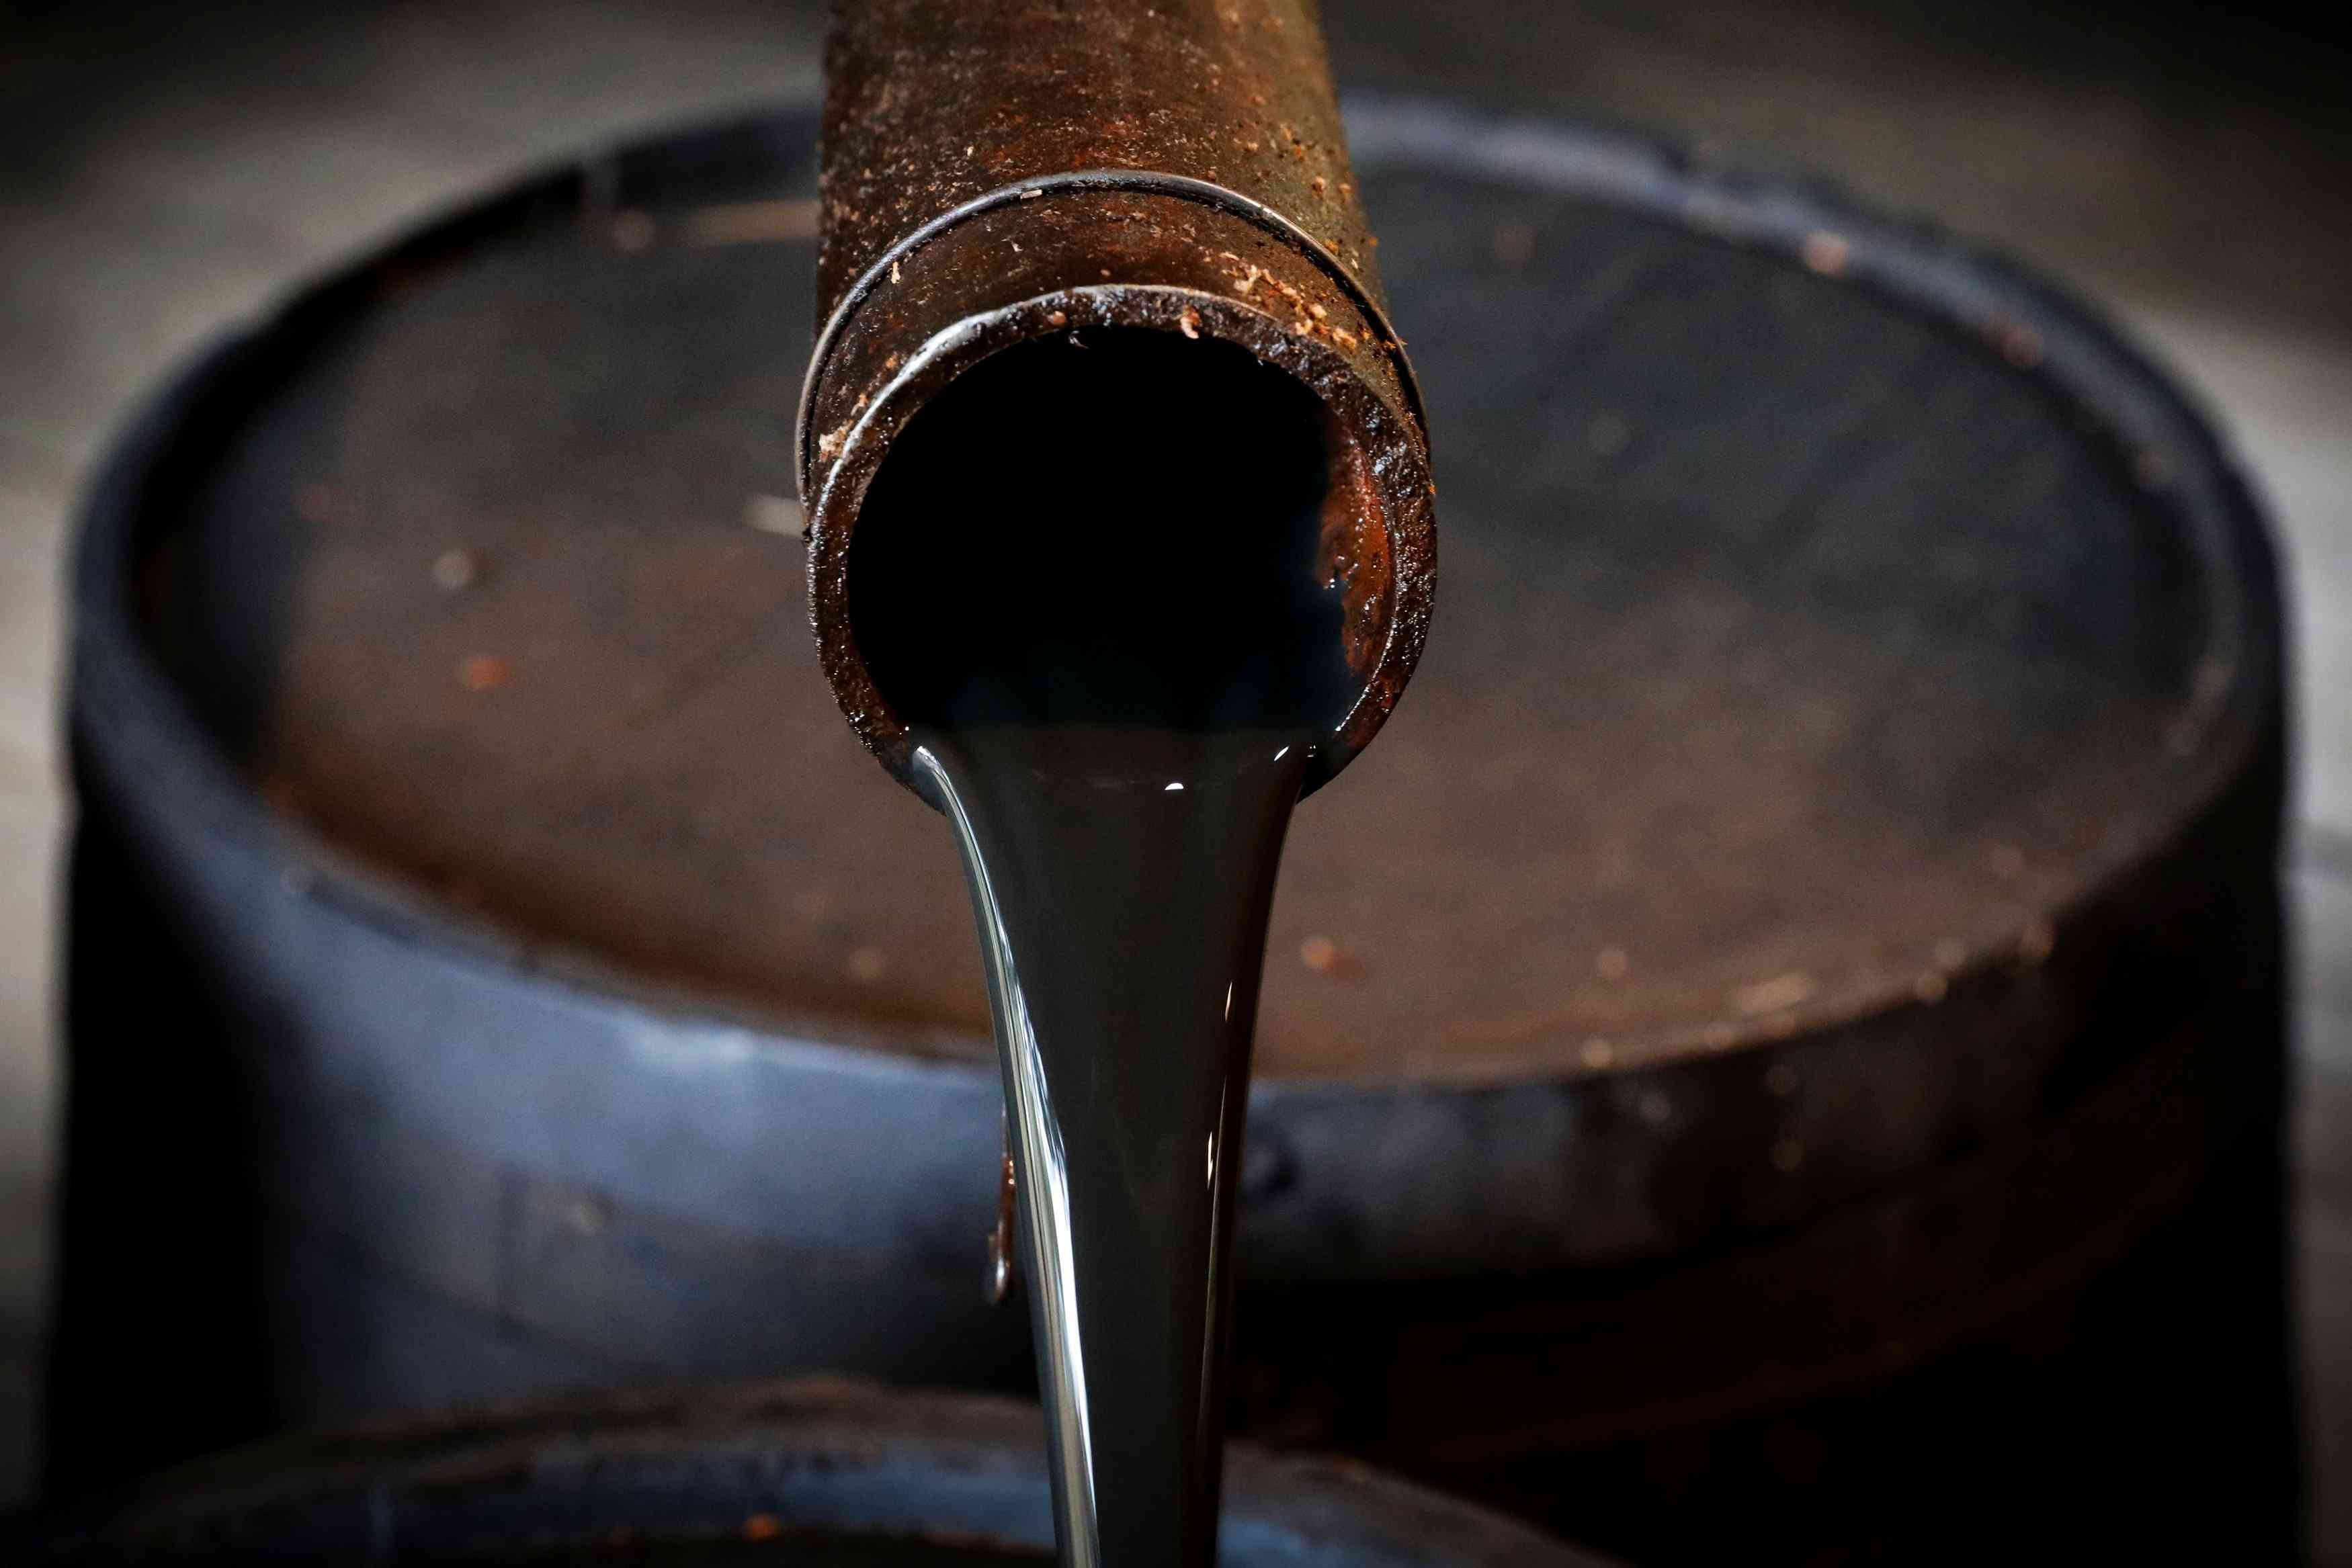 انخفاض أسعار النفط لليوم الثاني على التوالي